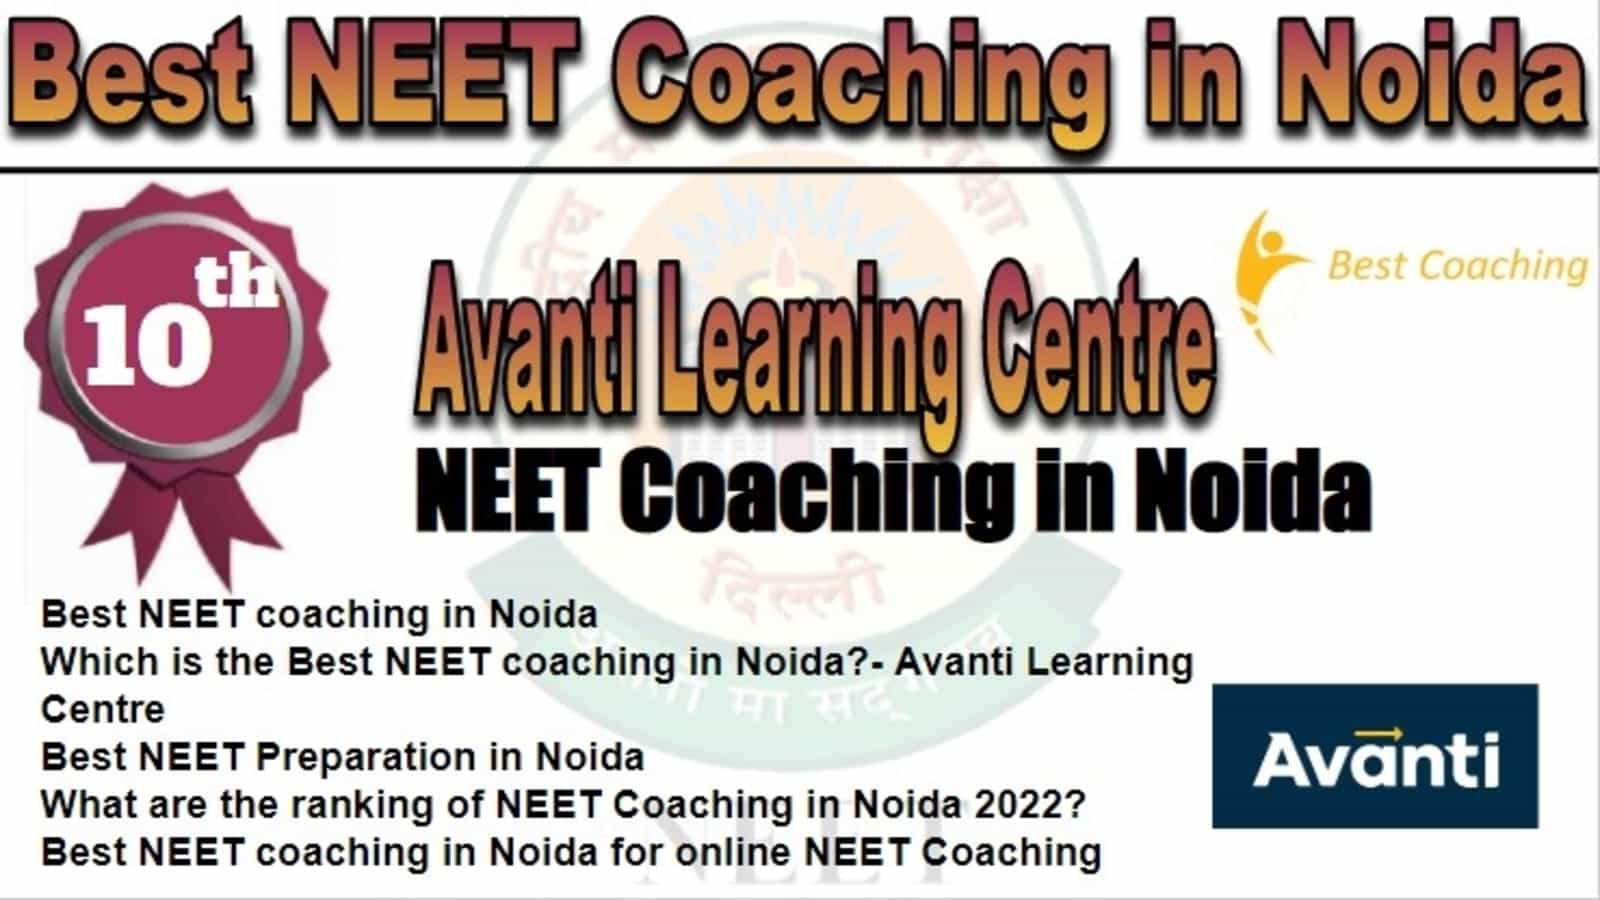 Rank 10 Best NEET Coaching in Noida